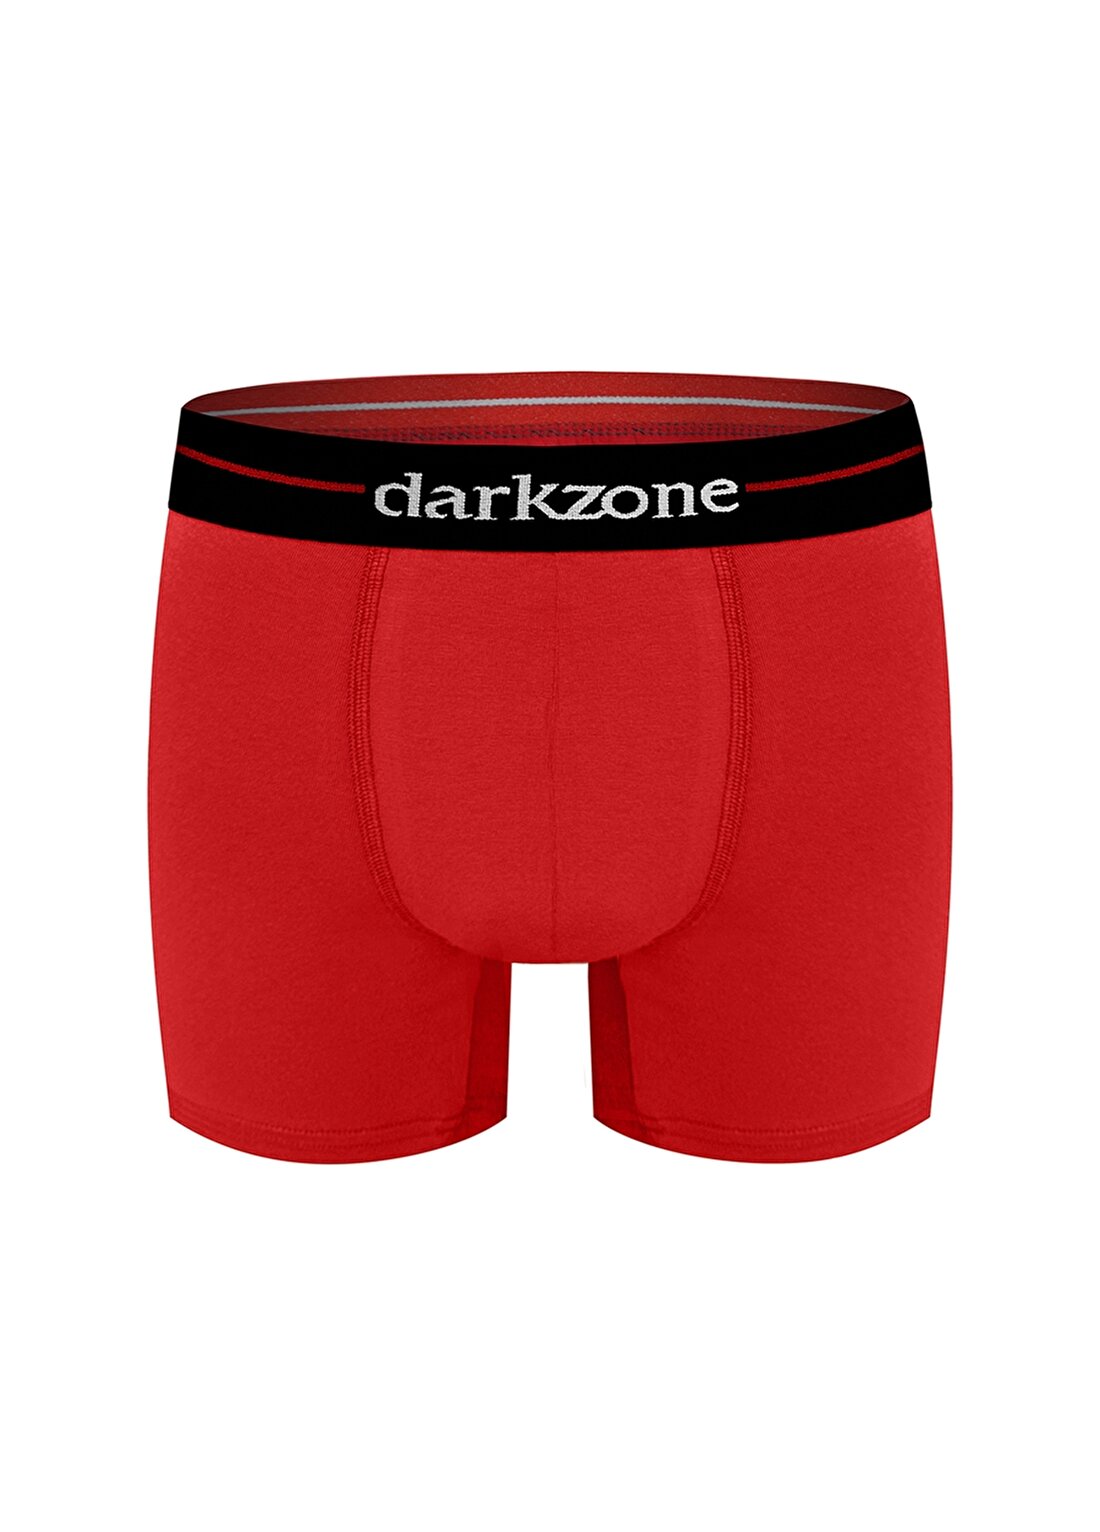 Darkzone Kırmızı Erkek Boxer DZN2056